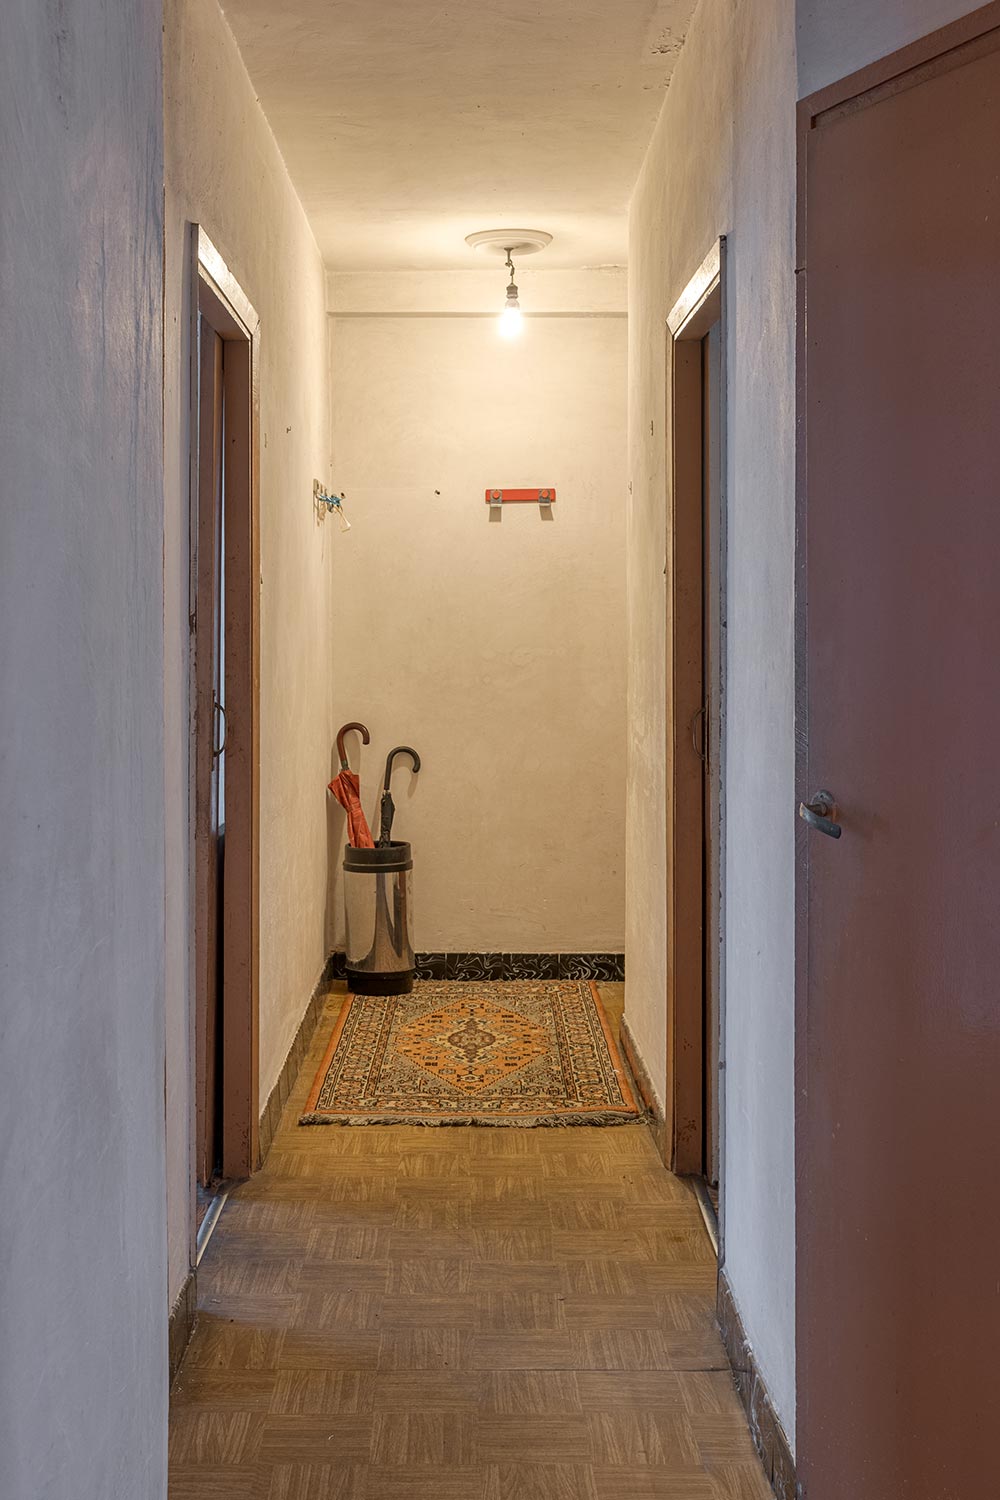 Pasillo interior de vivienda con suelo de parquet y alfombra decorativa.